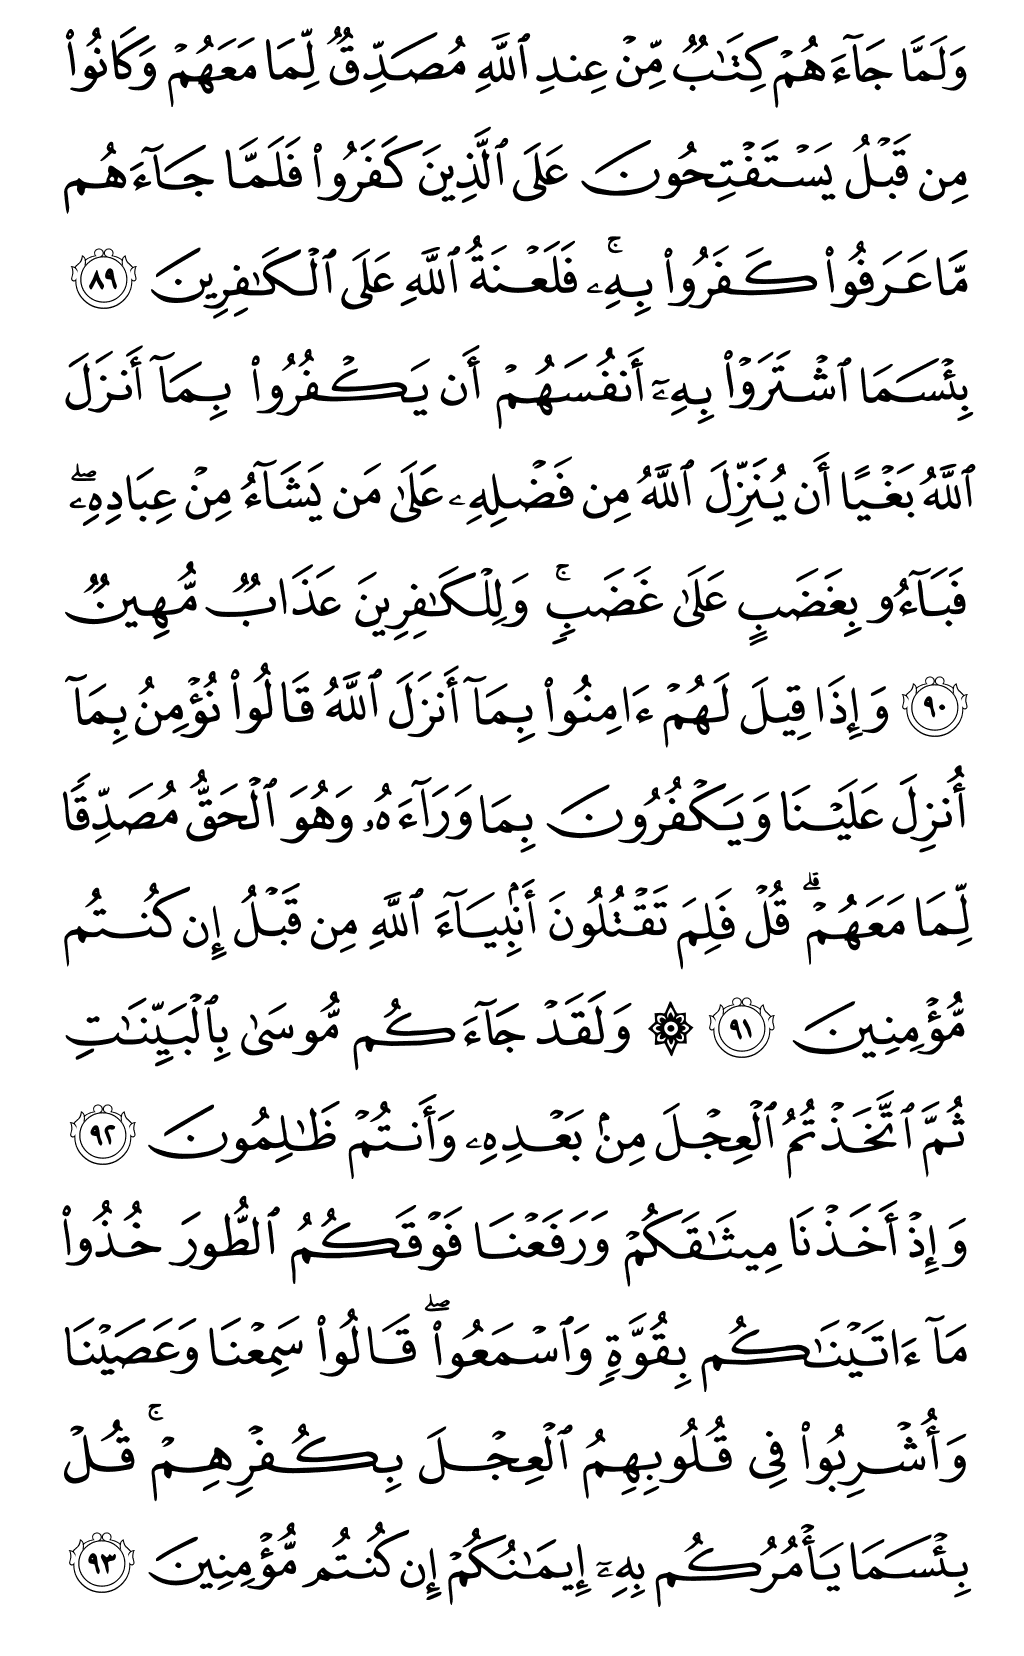 الصفحة رقم 14 من القرآن الكريم